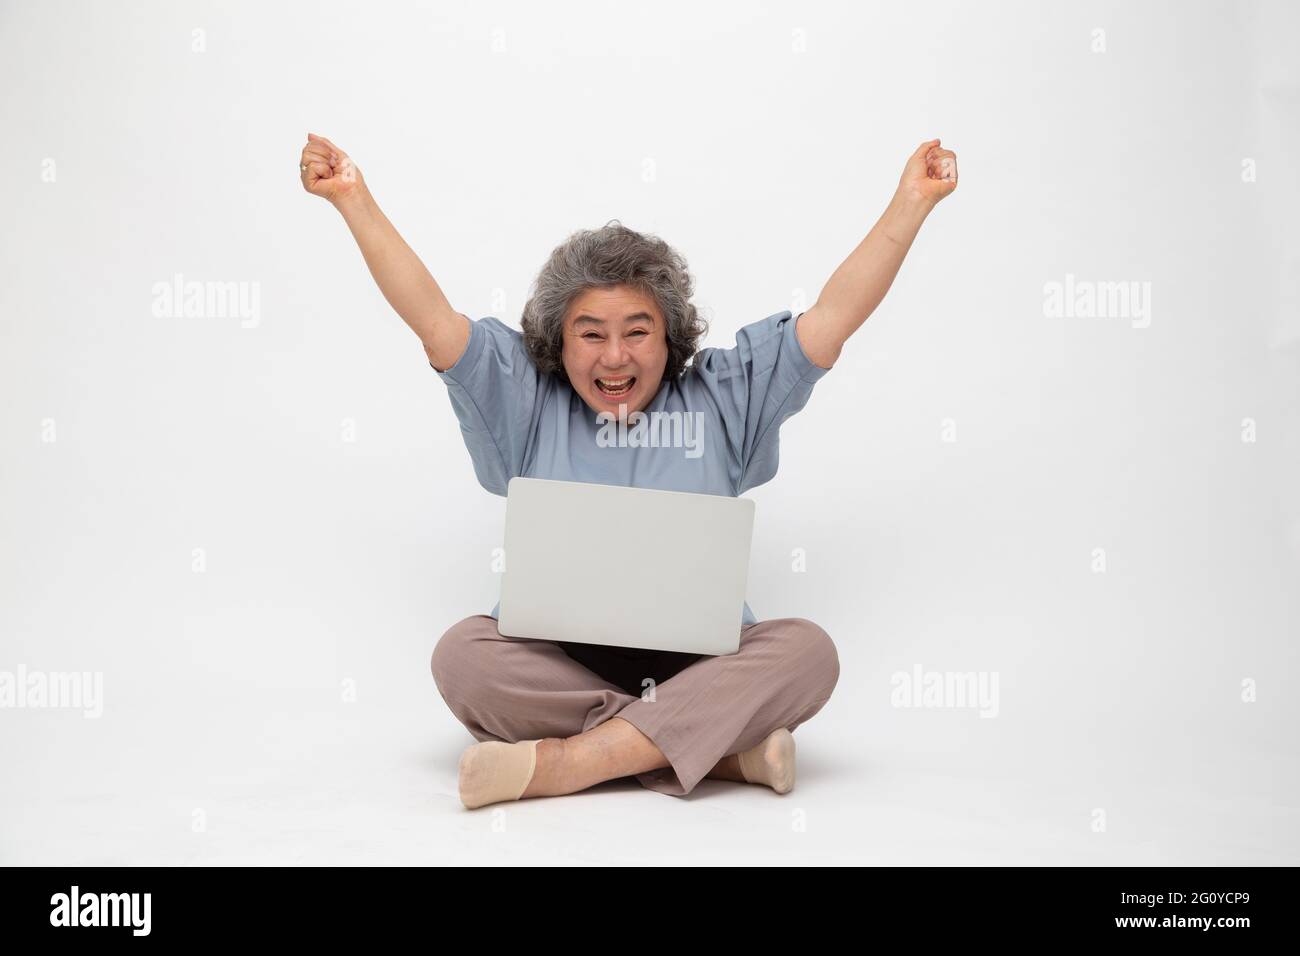 Aufgeregt Senior asiatische Frau Gefühl Gewinner feiern Sieg Online-Geschäftserfolg und sitzen auf dem Boden mit Laptop isoliert auf weißem Hintergrund, F Stockfoto